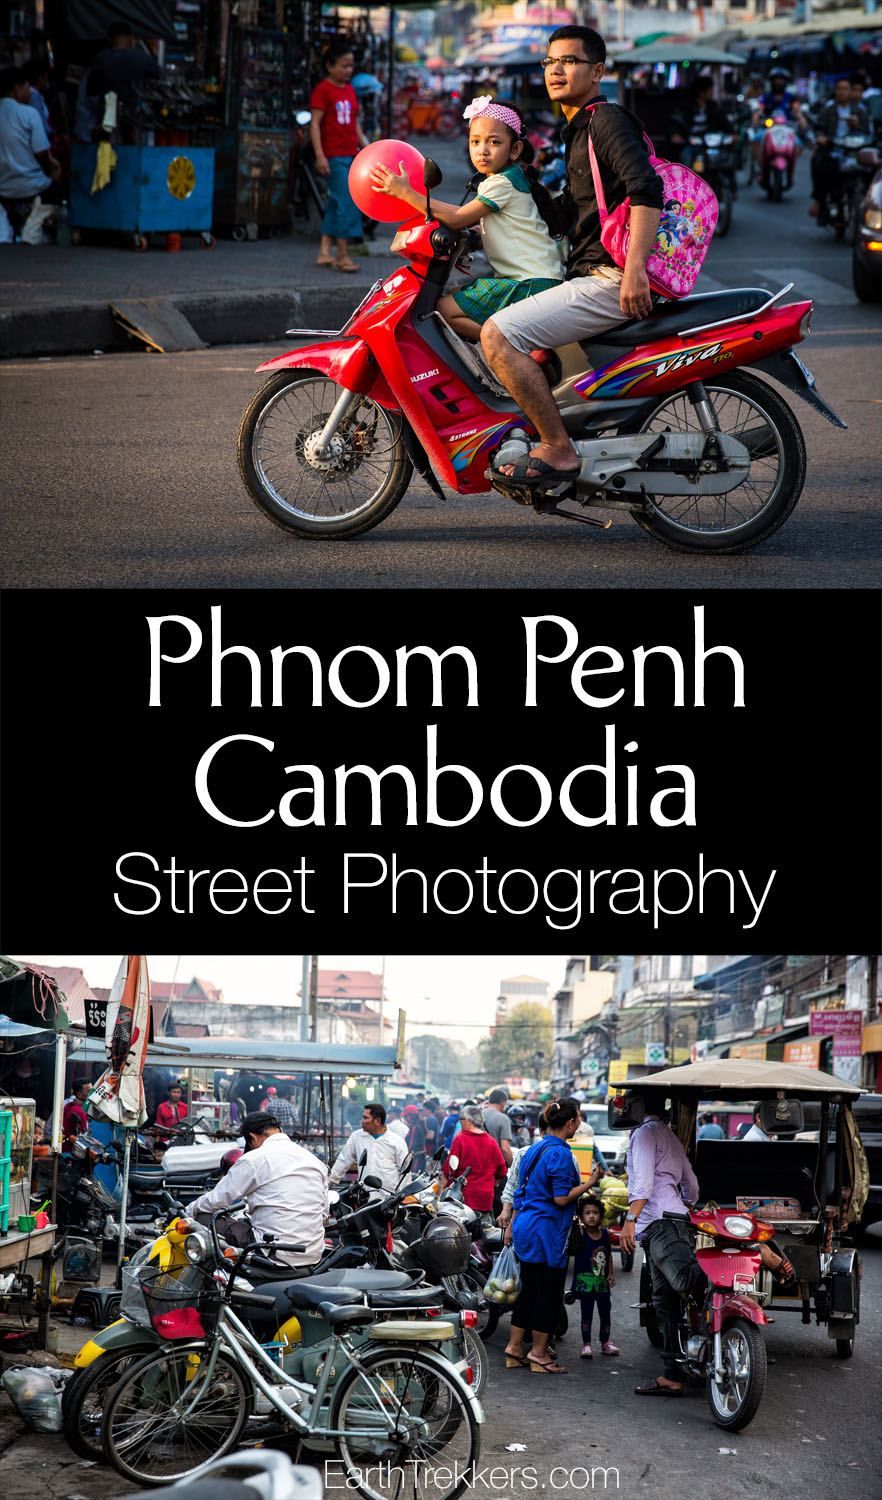 Phnom Penh Cambodia Street Photography